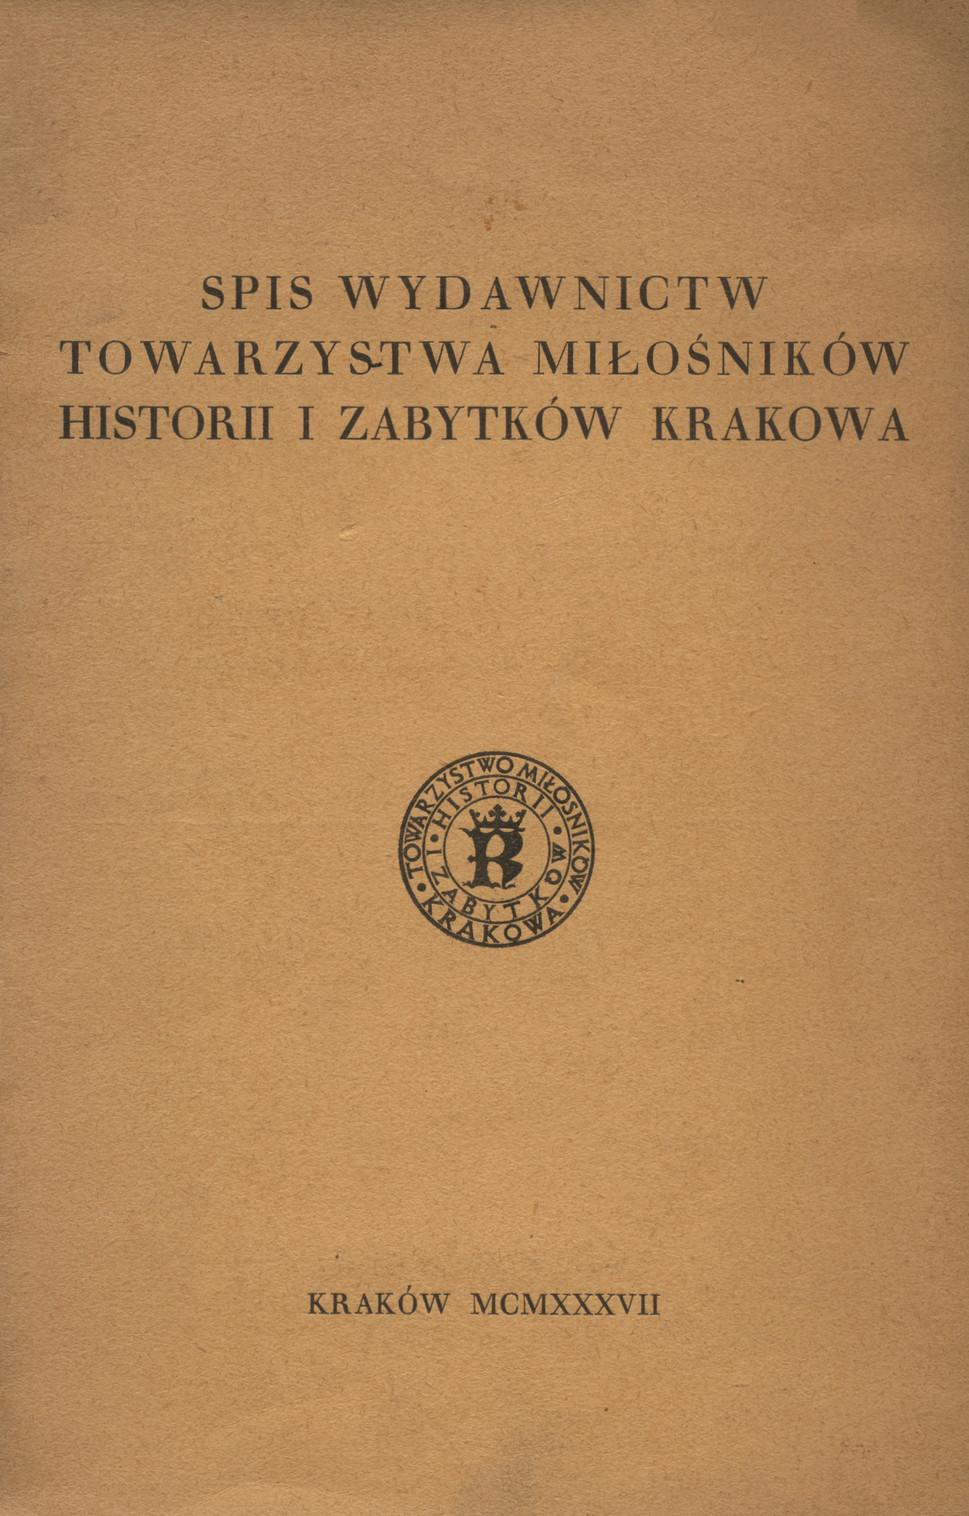 Spis wydawnictw Towarzystwa Miłosników Historii i Zabytków Krakowa